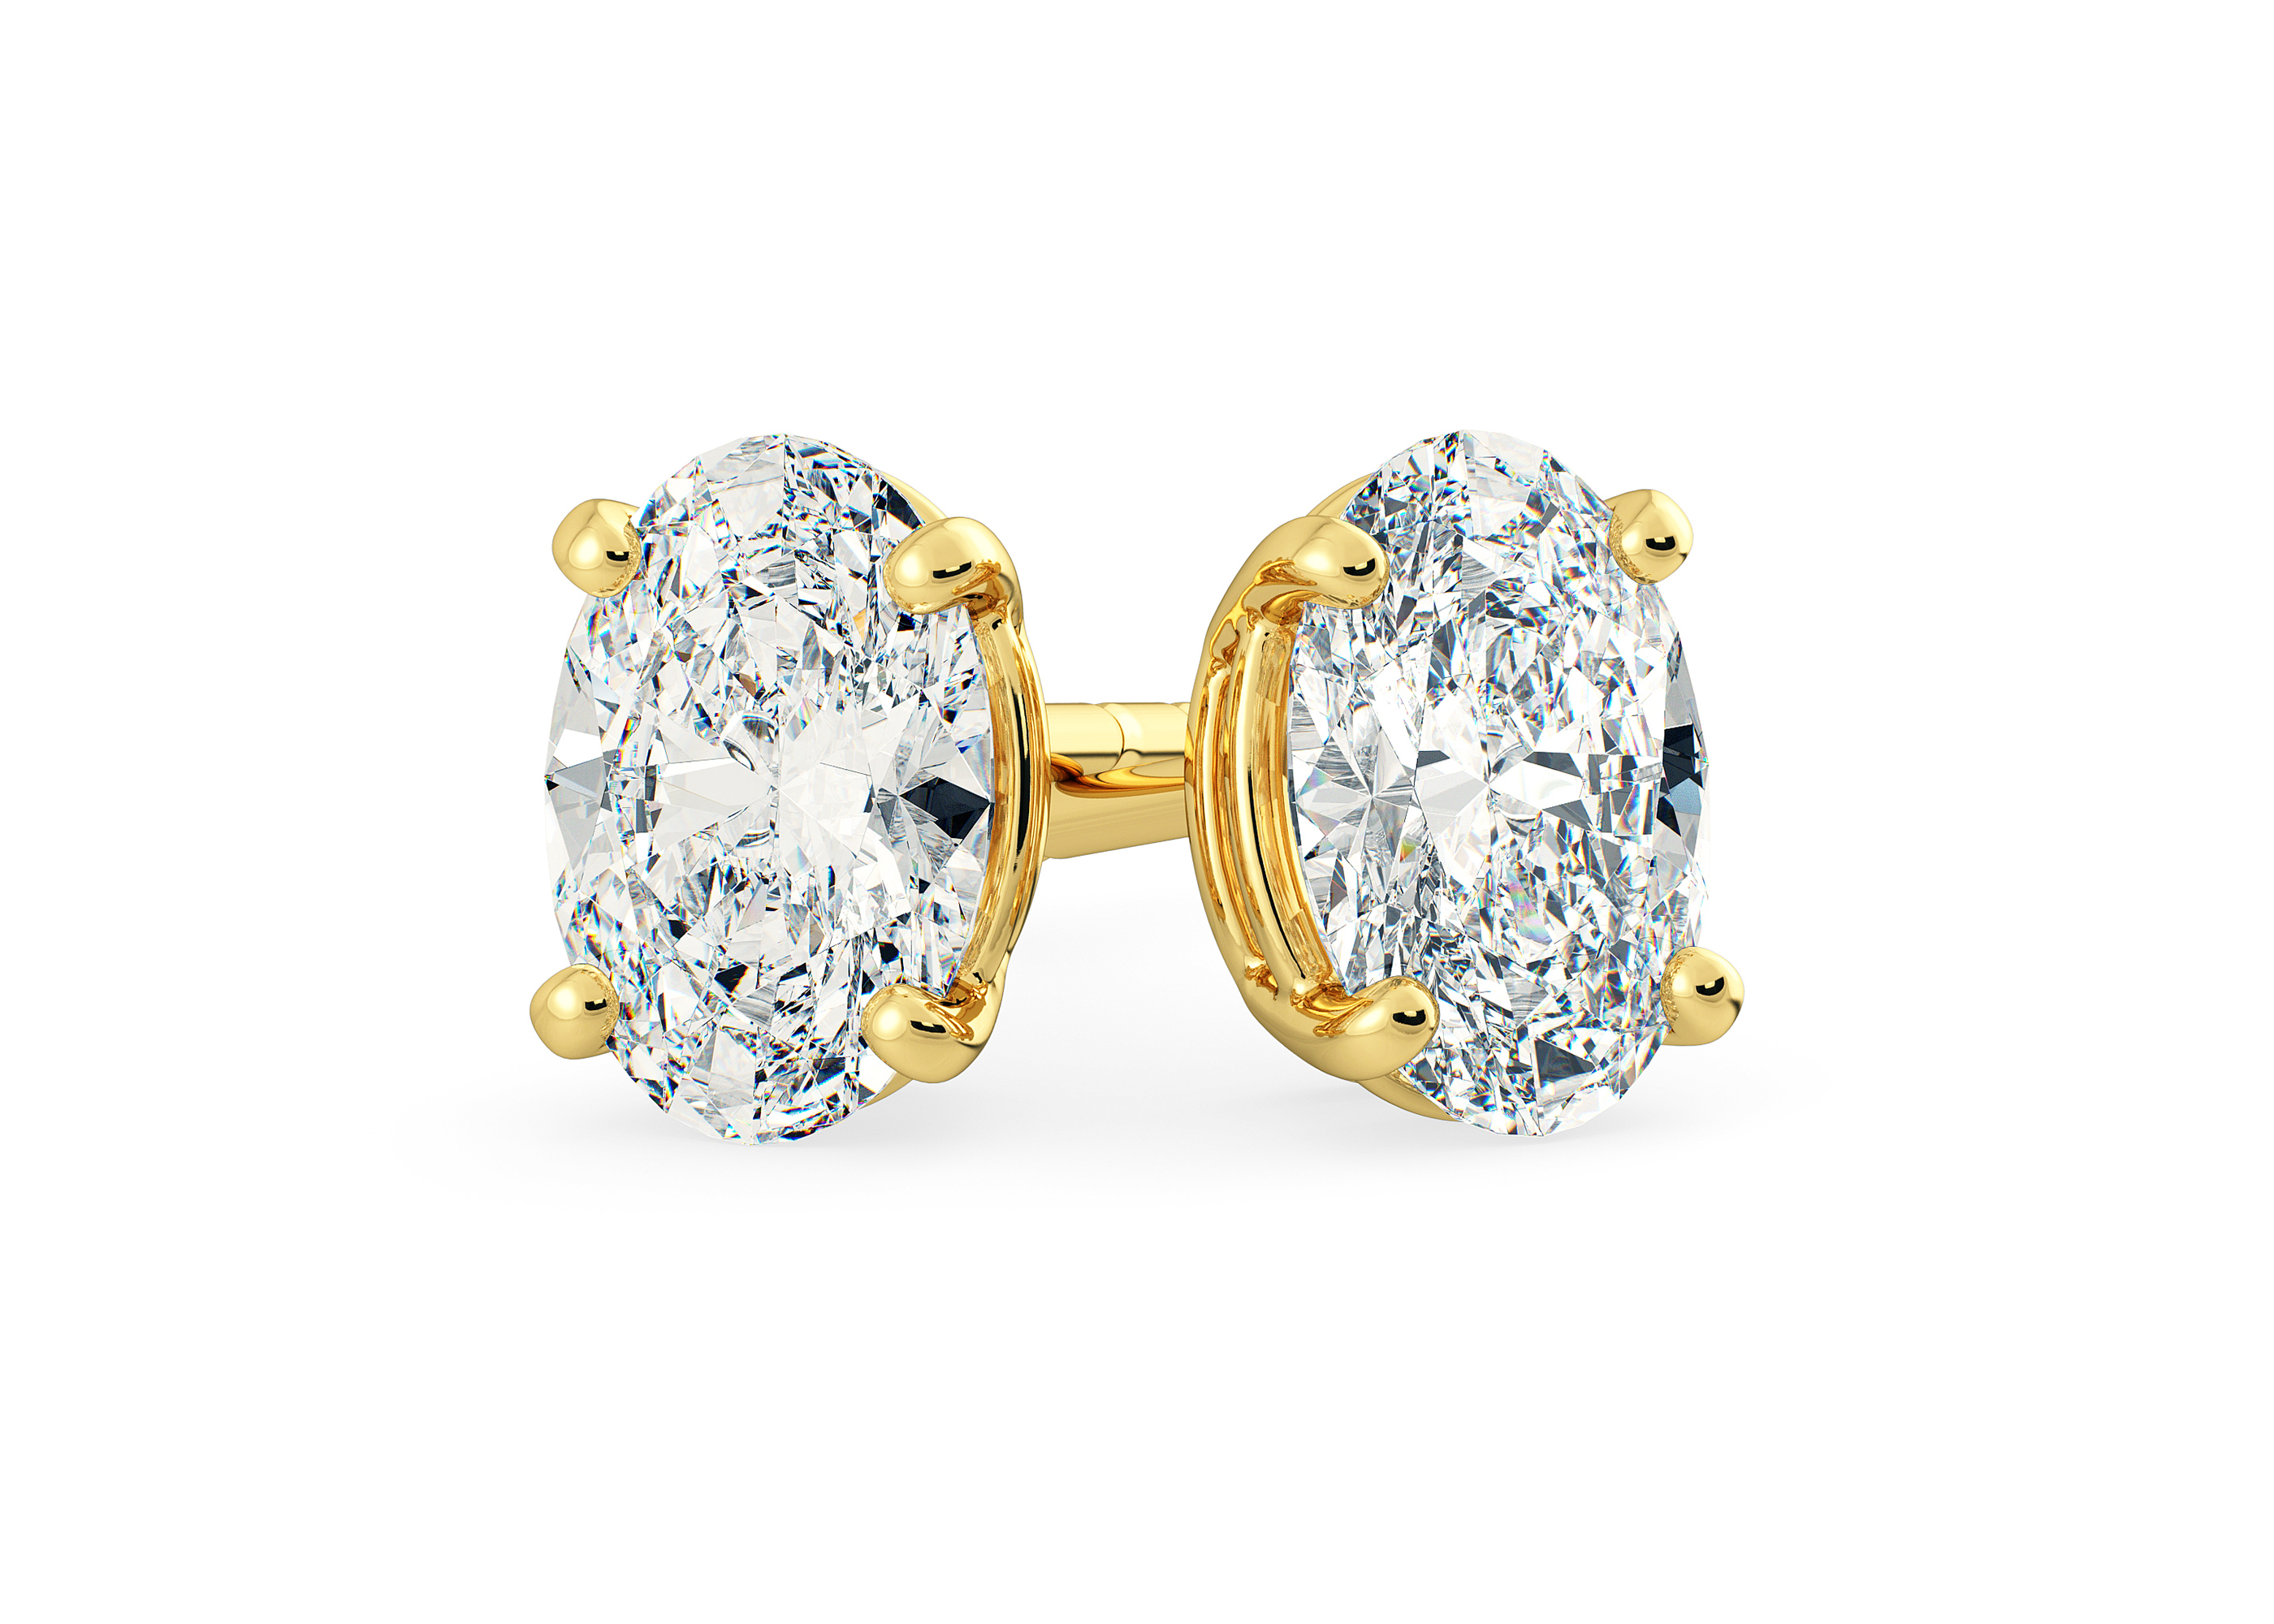 One Carat Oval Diamond Stud Earrings in 18K Yellow Gold